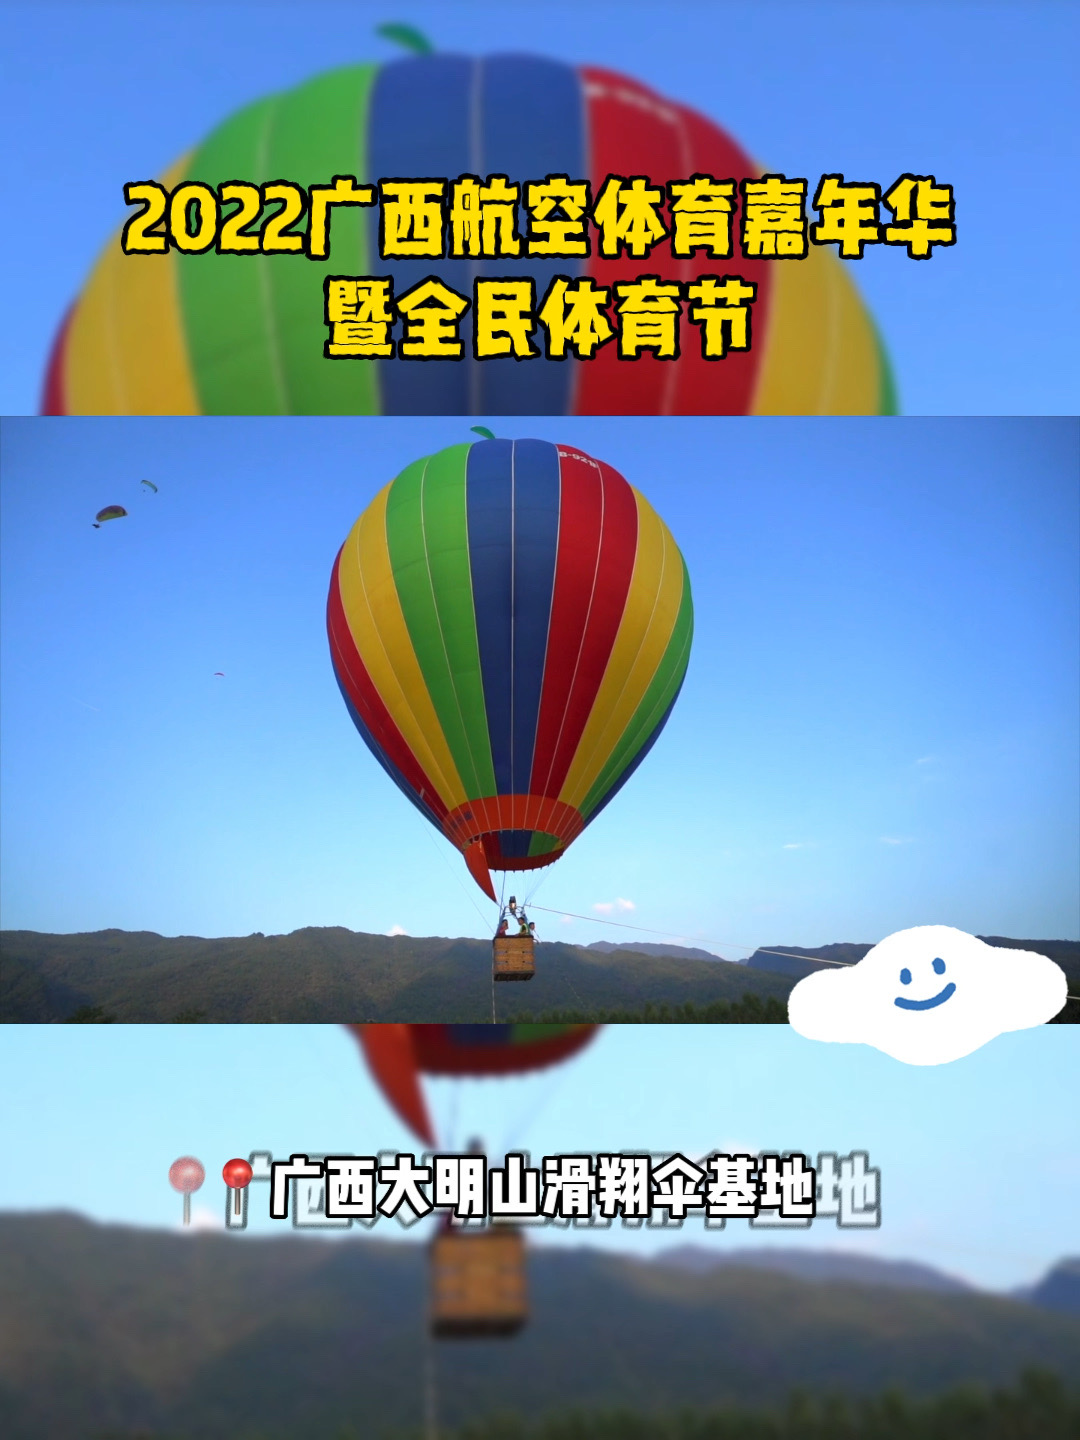 广西航空体育活动成功在南宁举办！#南宁周边游 #南宁滑翔伞 #南宁露营 #南宁热气球